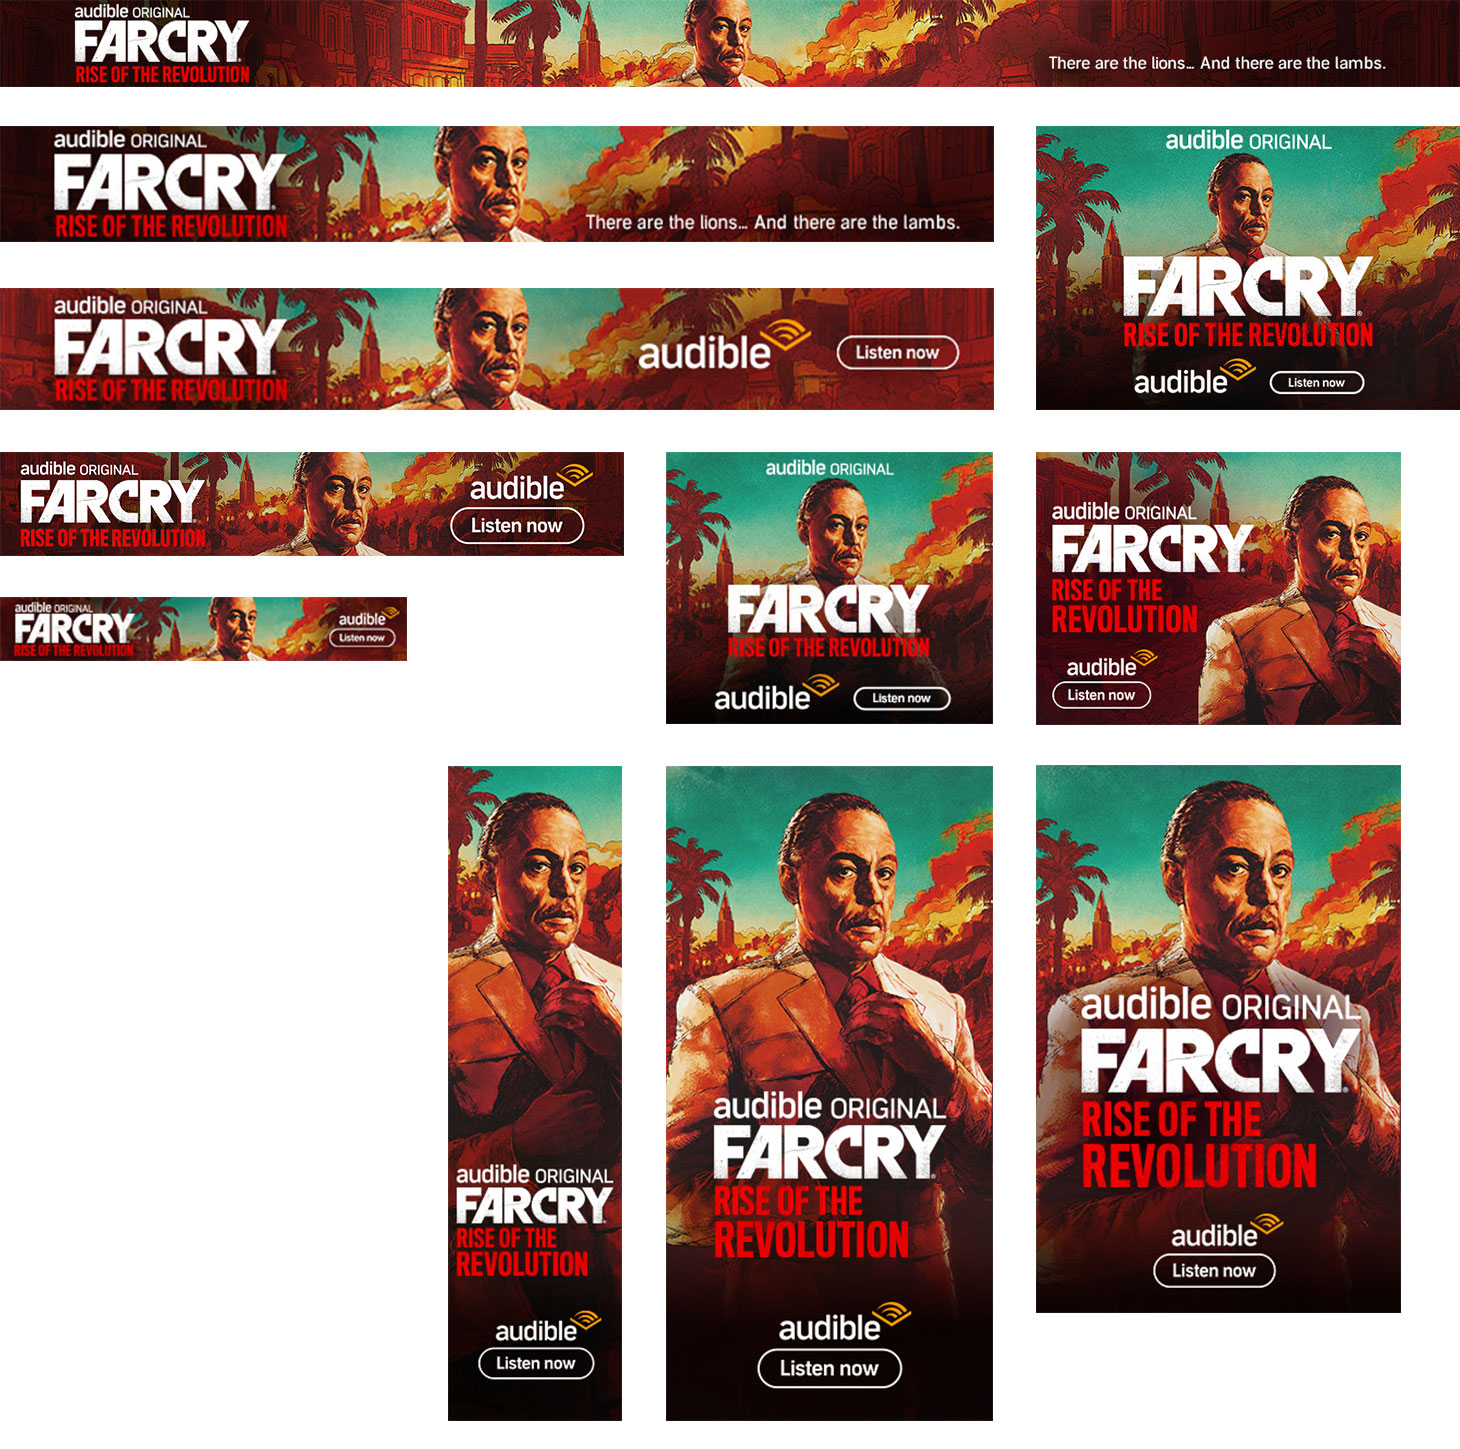 FarCry_SmallUnits_2